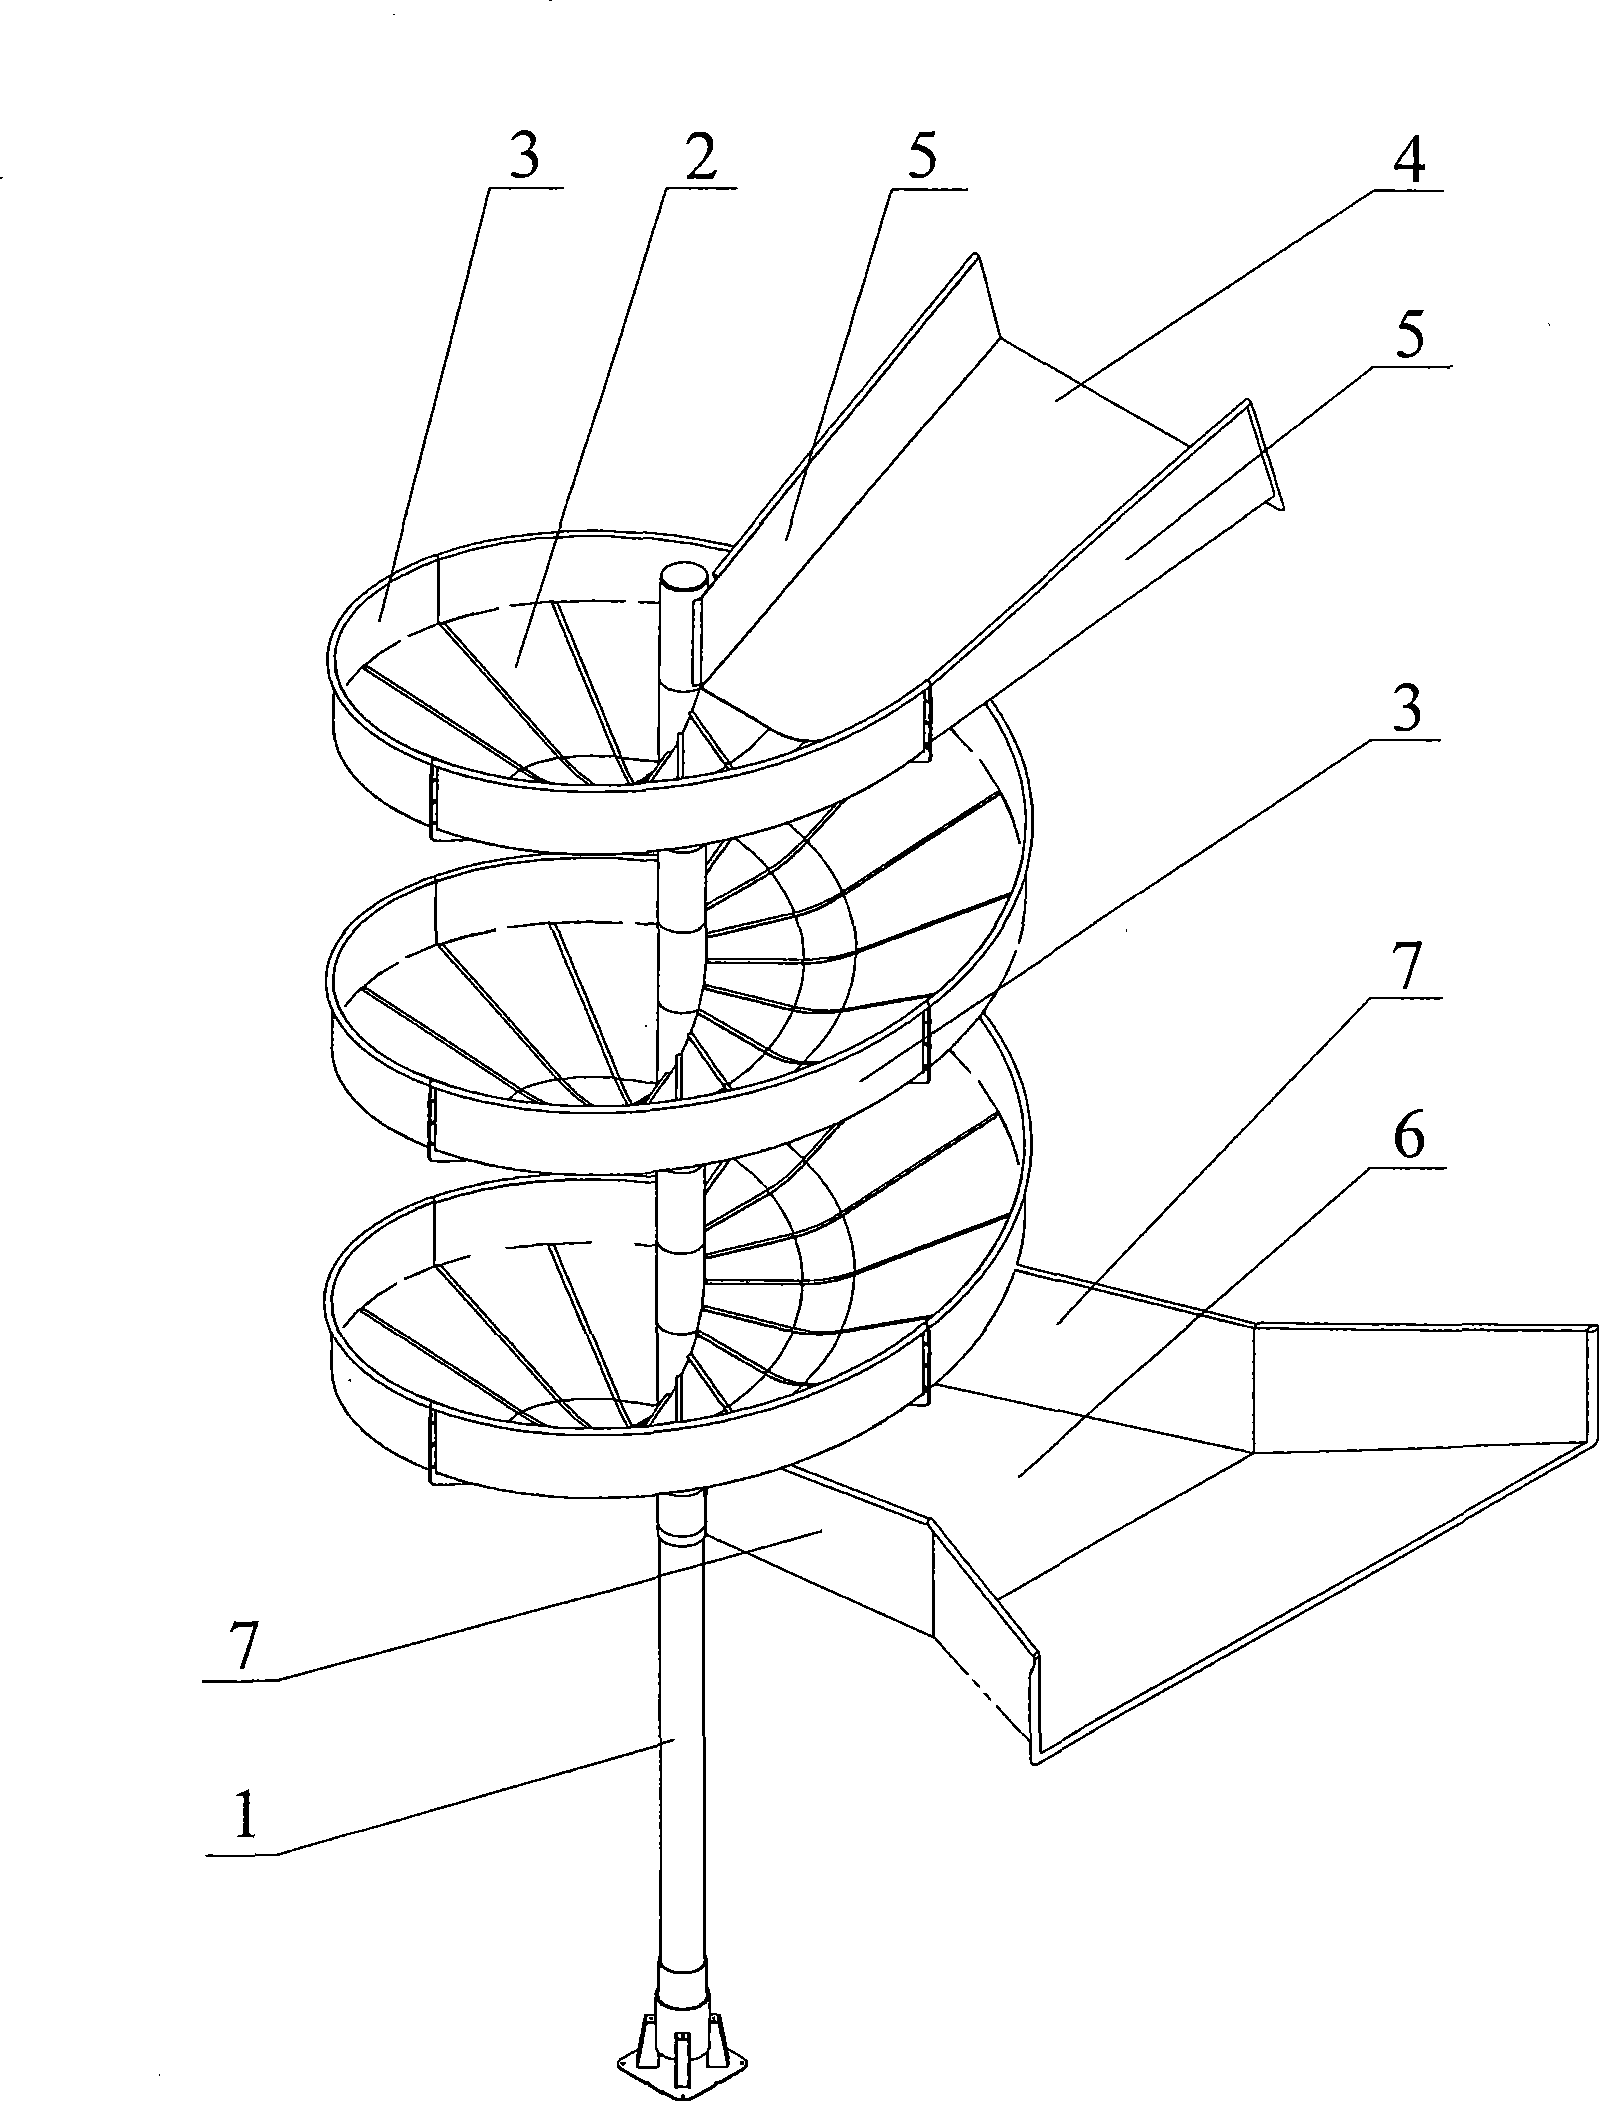 Spiral chute conveyer